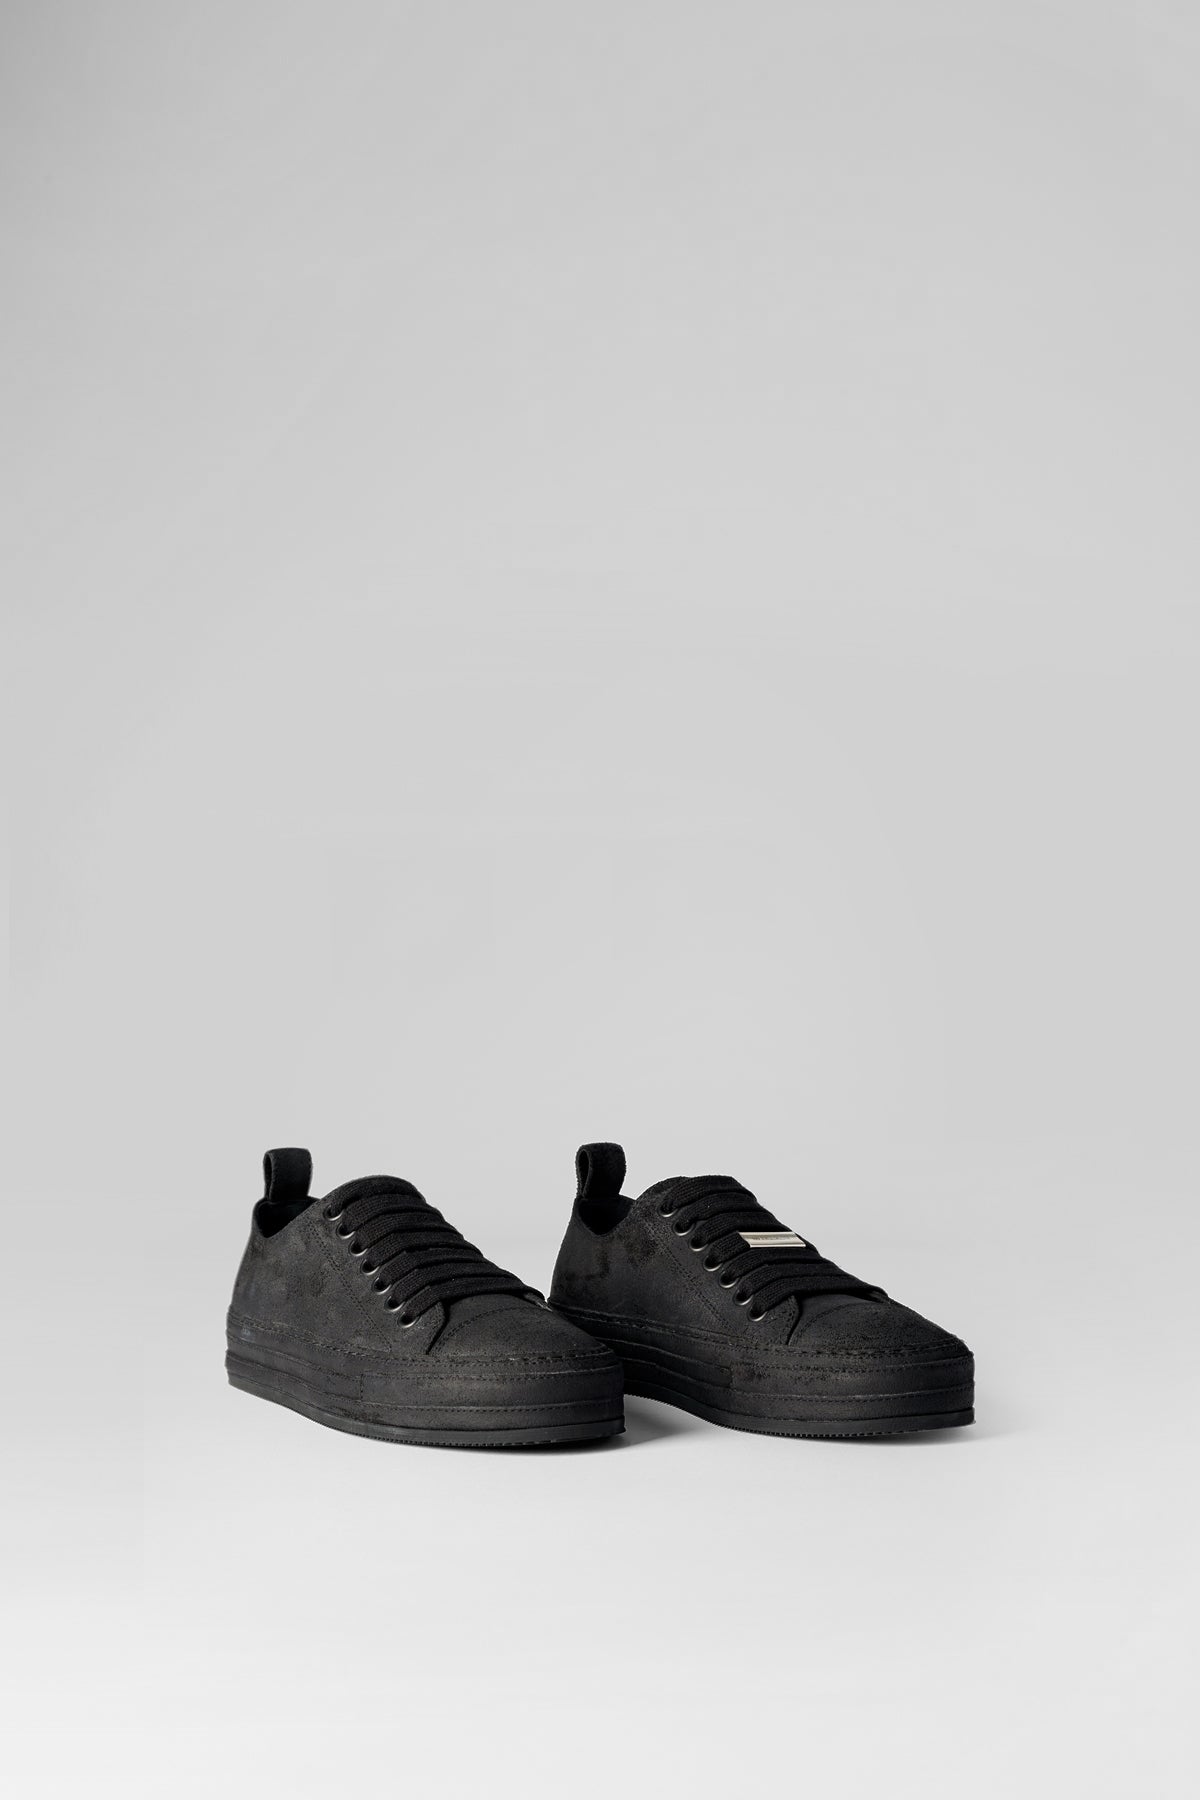 Gert Low Top Sneakers Crosta Painted Black